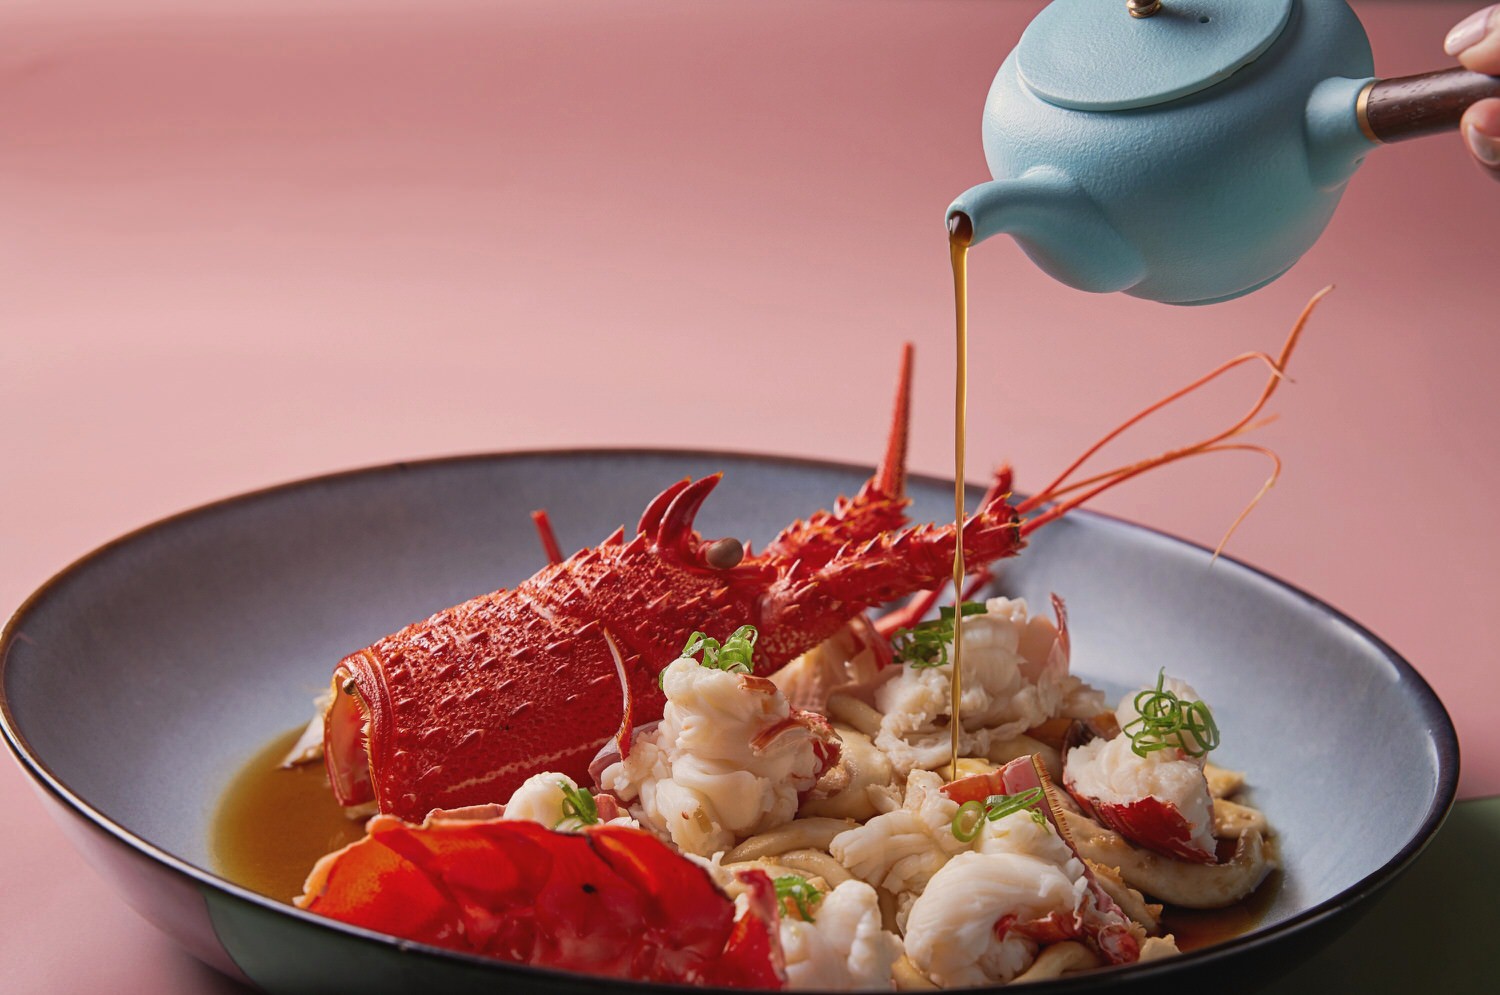 澳洲龍蝦底下鋪滿吸飽龍蝦湯汁精華、蒜蓉風味粄條的「清蒸龍蝦佐客家粄條」